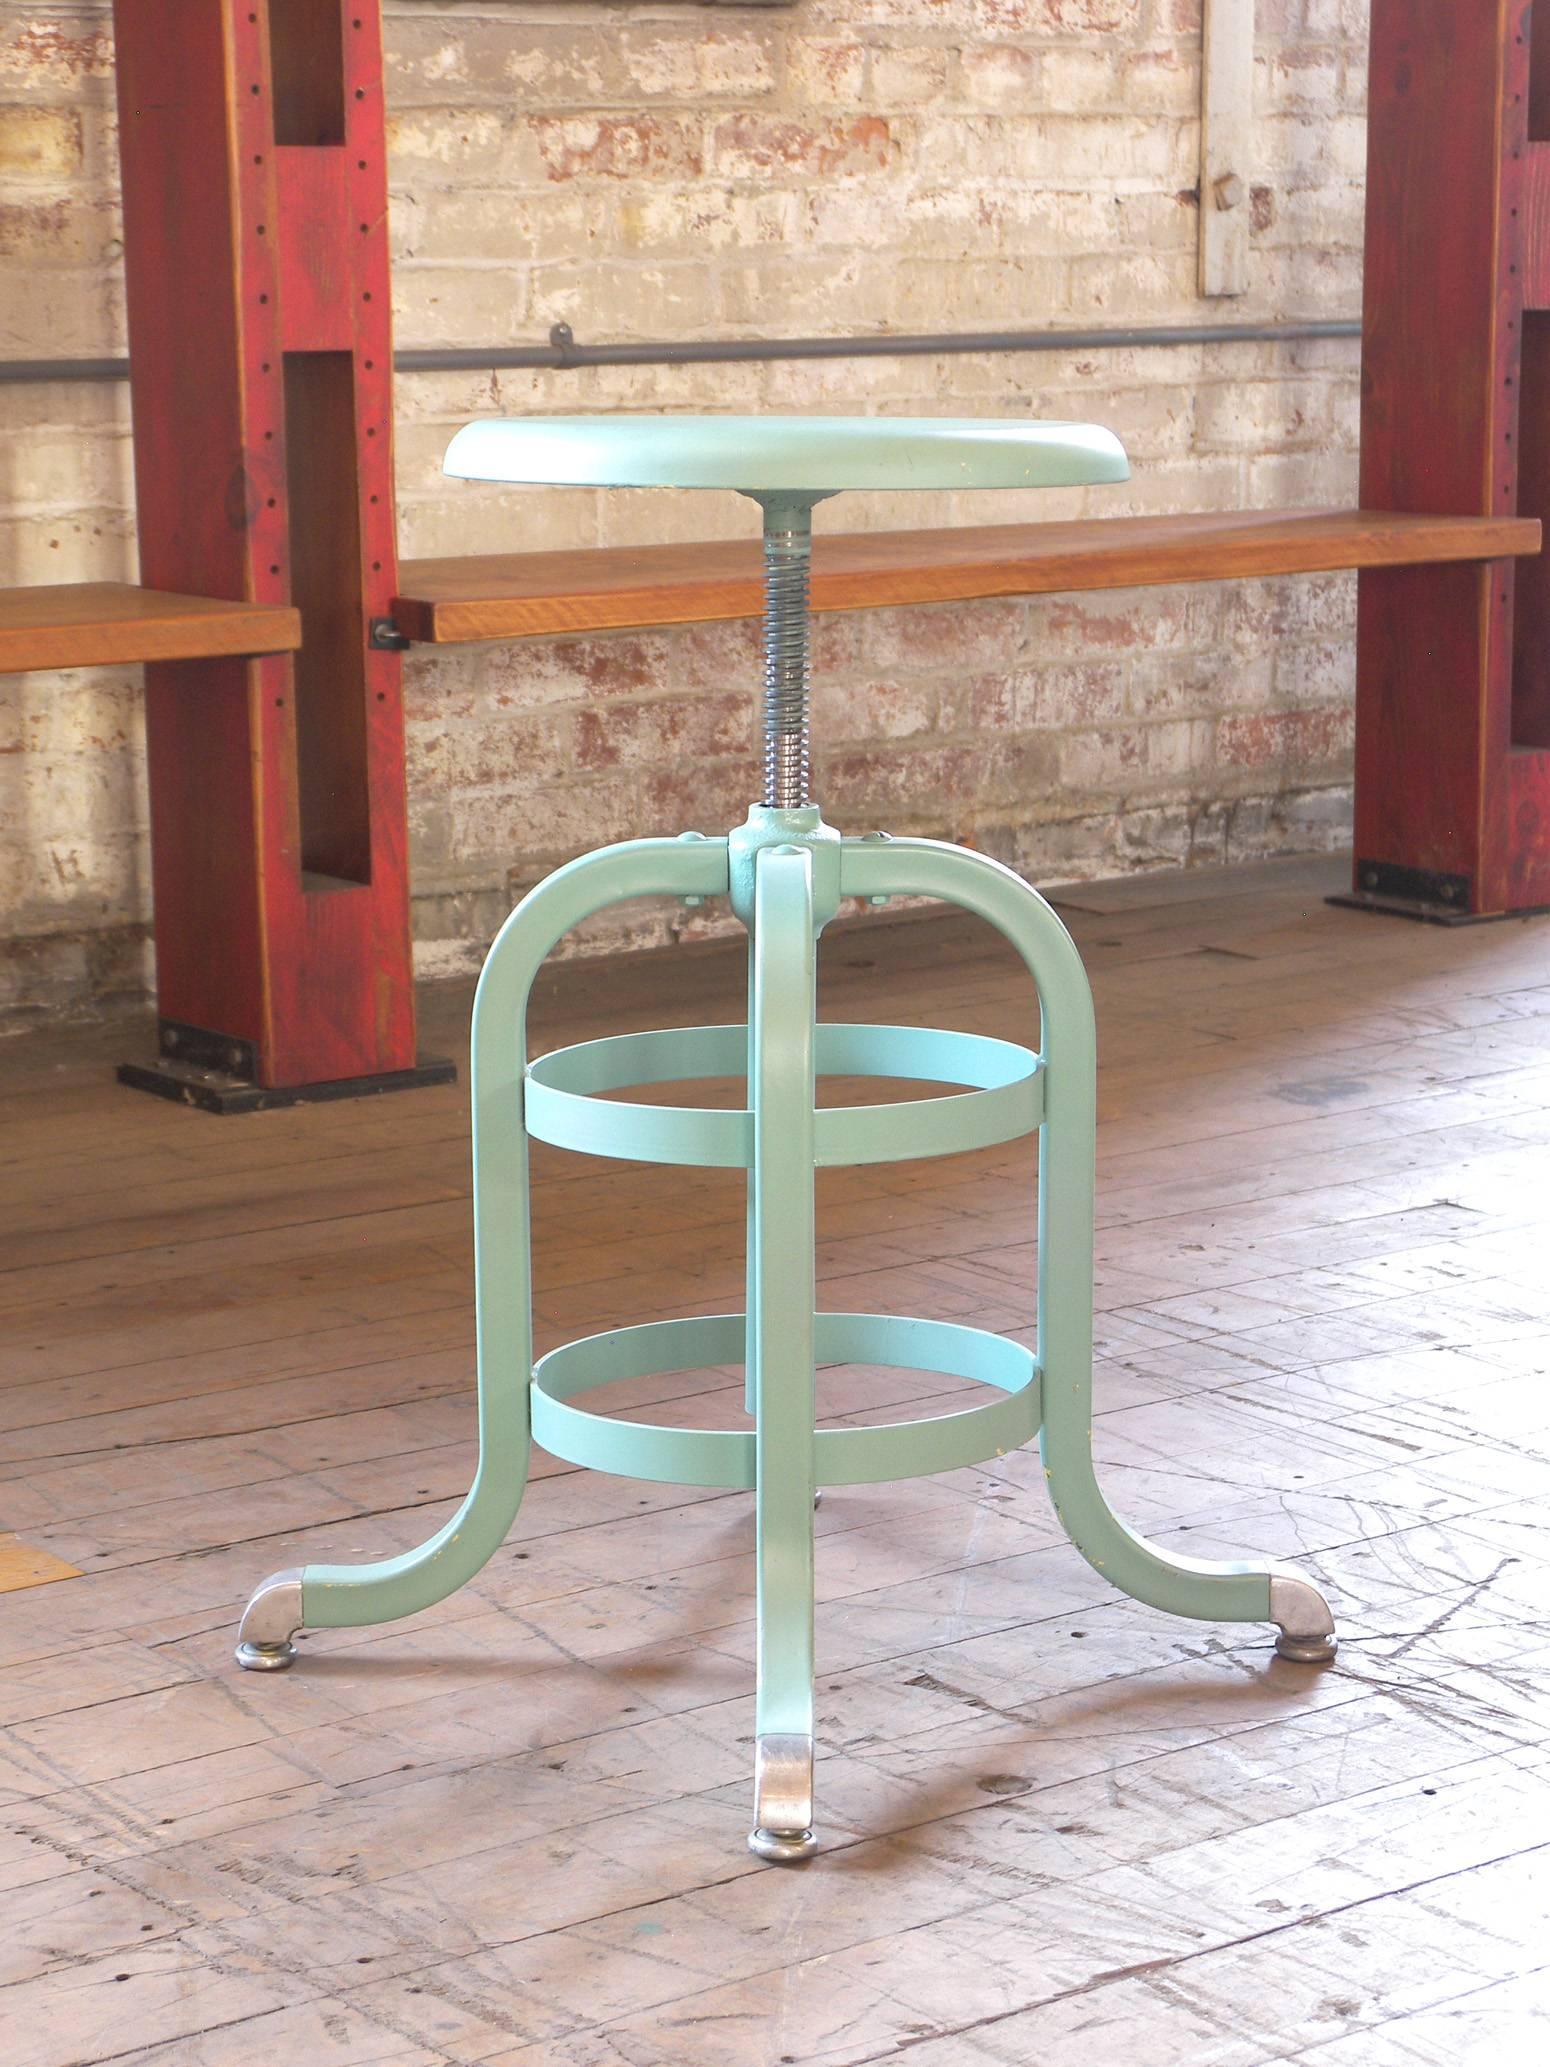 1930s American vintage medical stool – metal, adjustable, seafoam green. Base measures 15 1/2